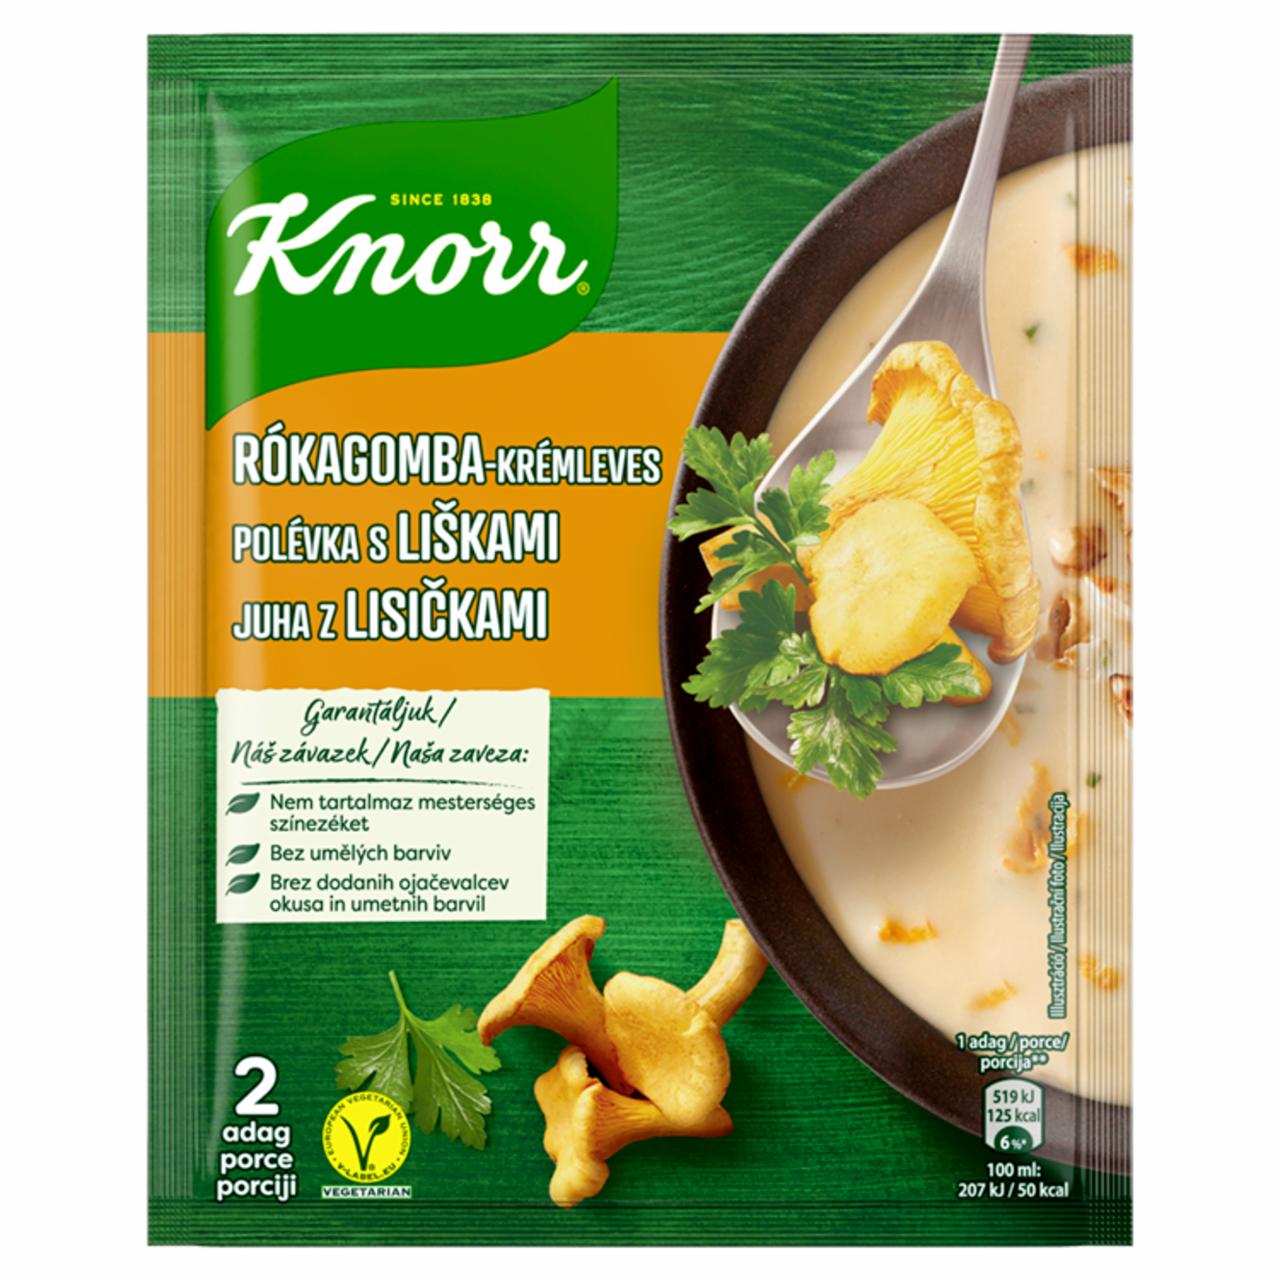 Képek - Knorr rókagomba-krémleves 56 g